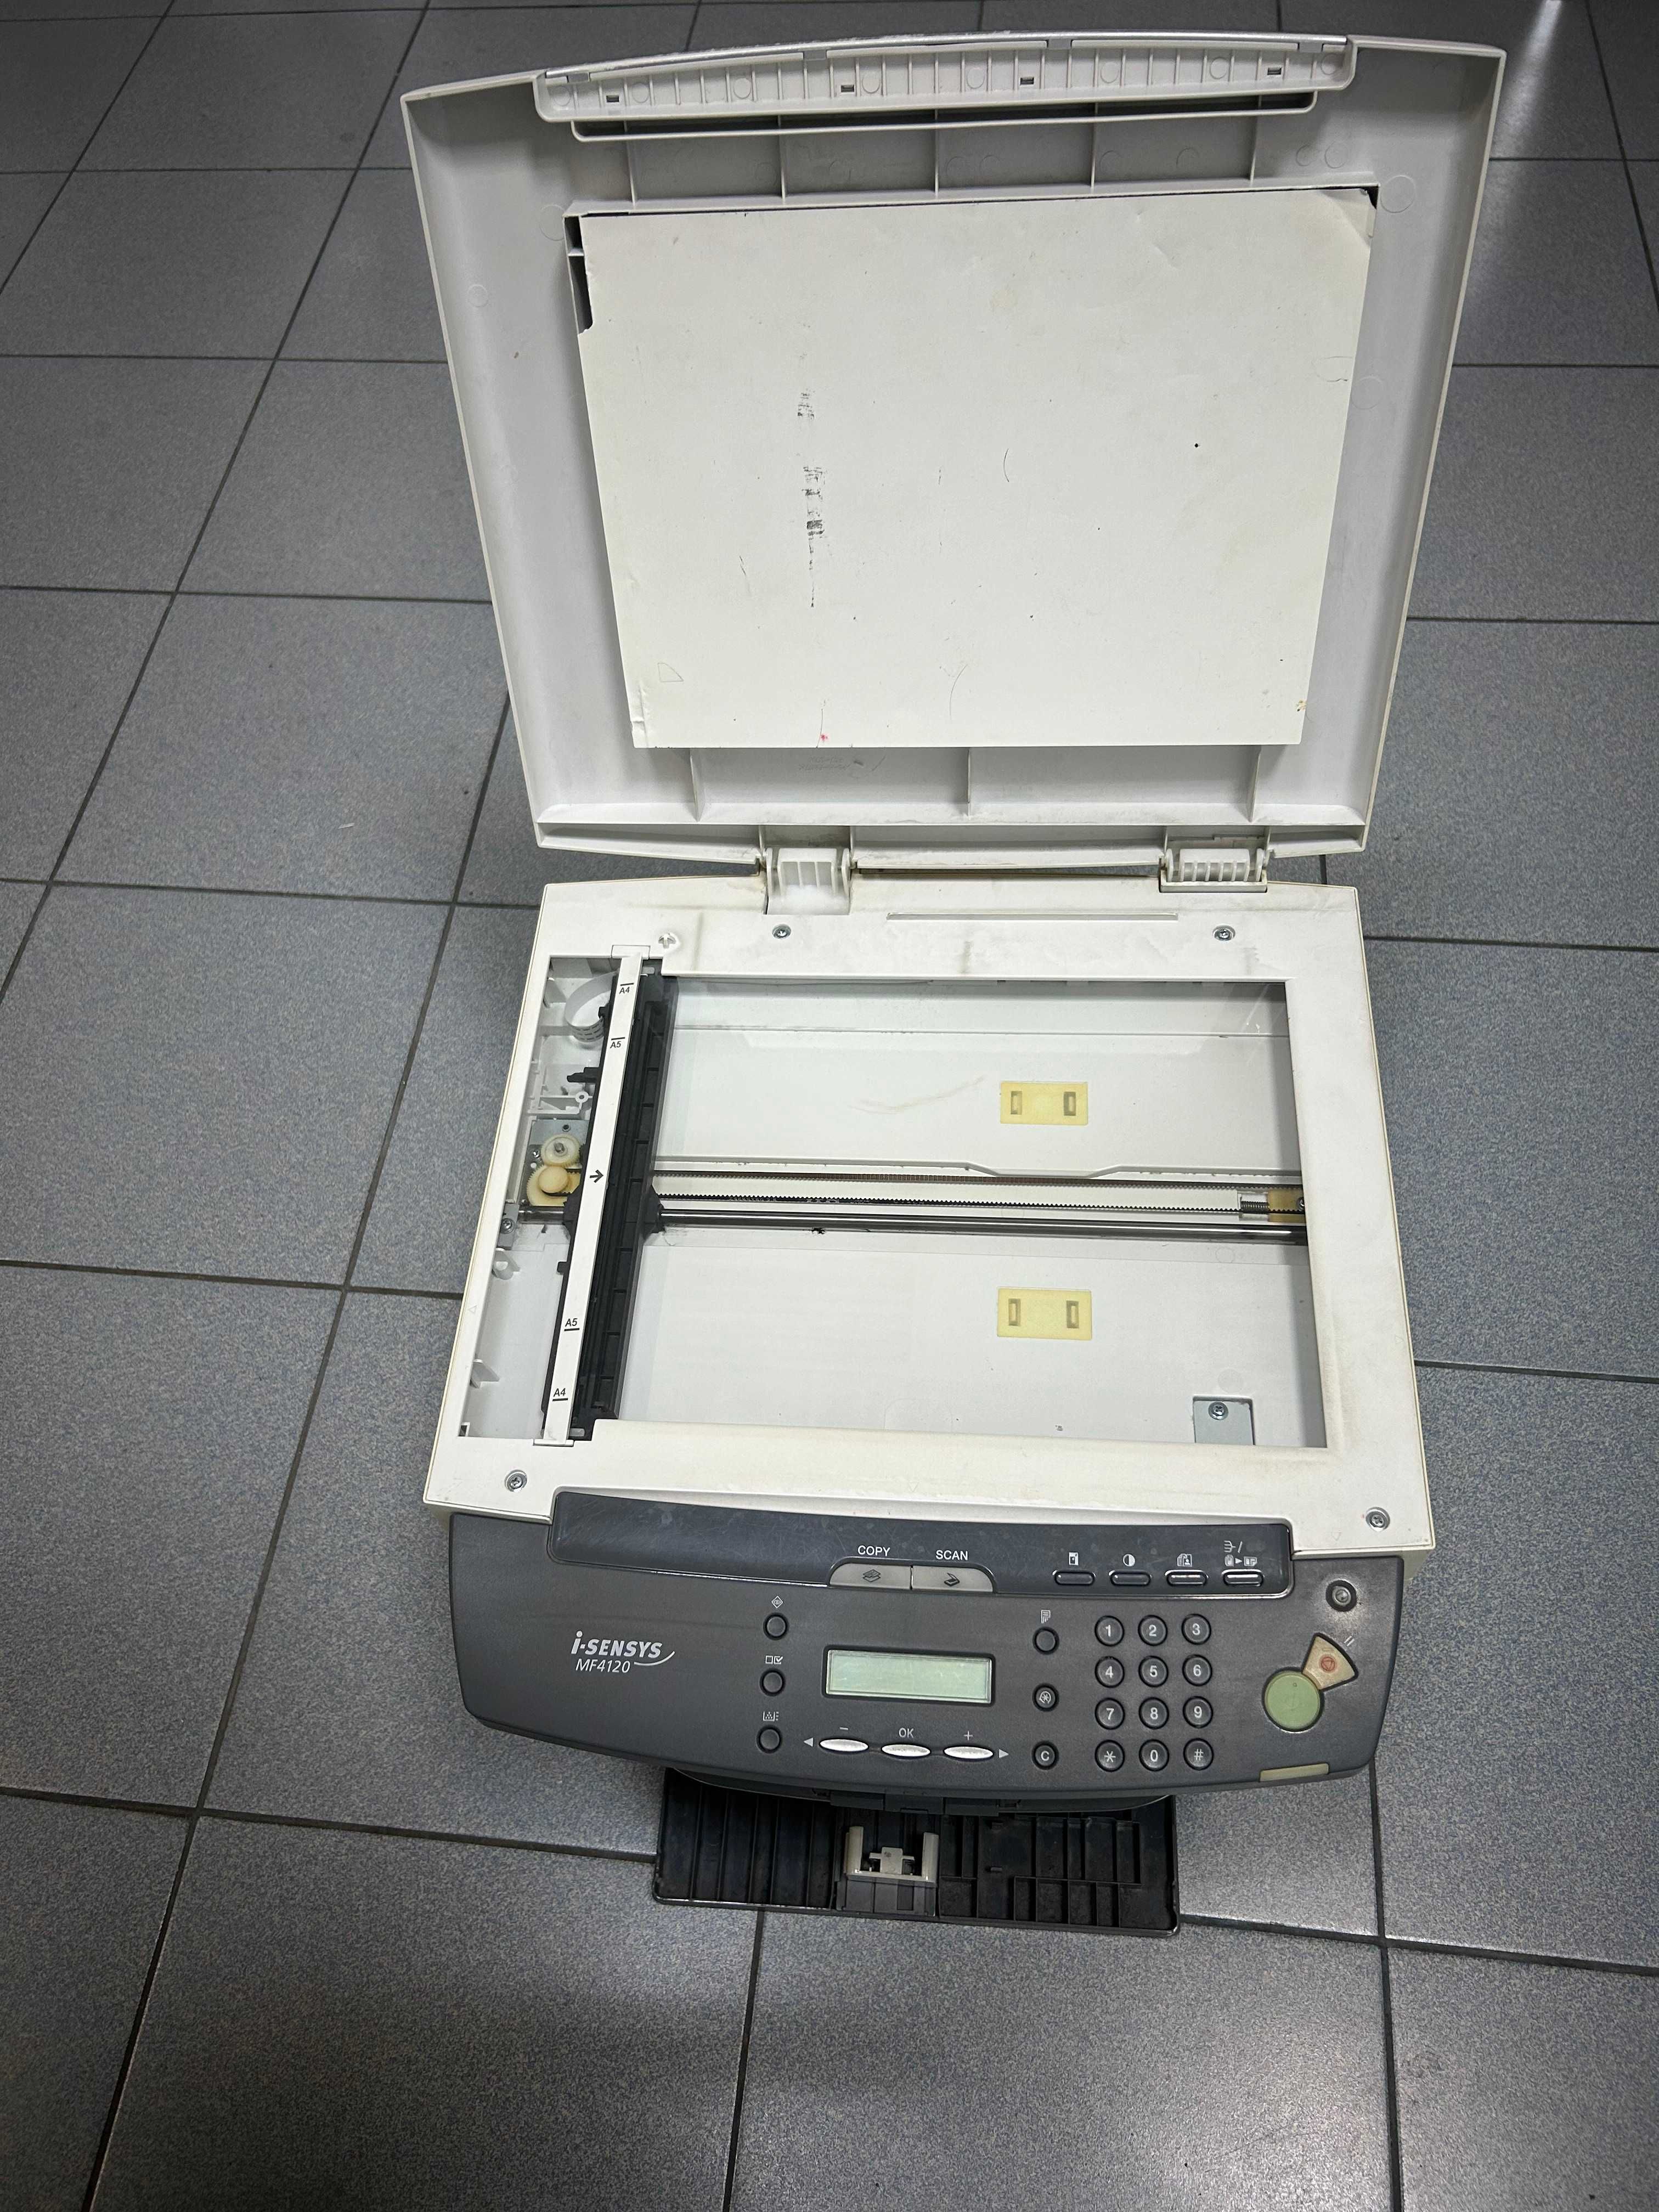 БФП  принтер СANON  i-SENSYS  MF4120